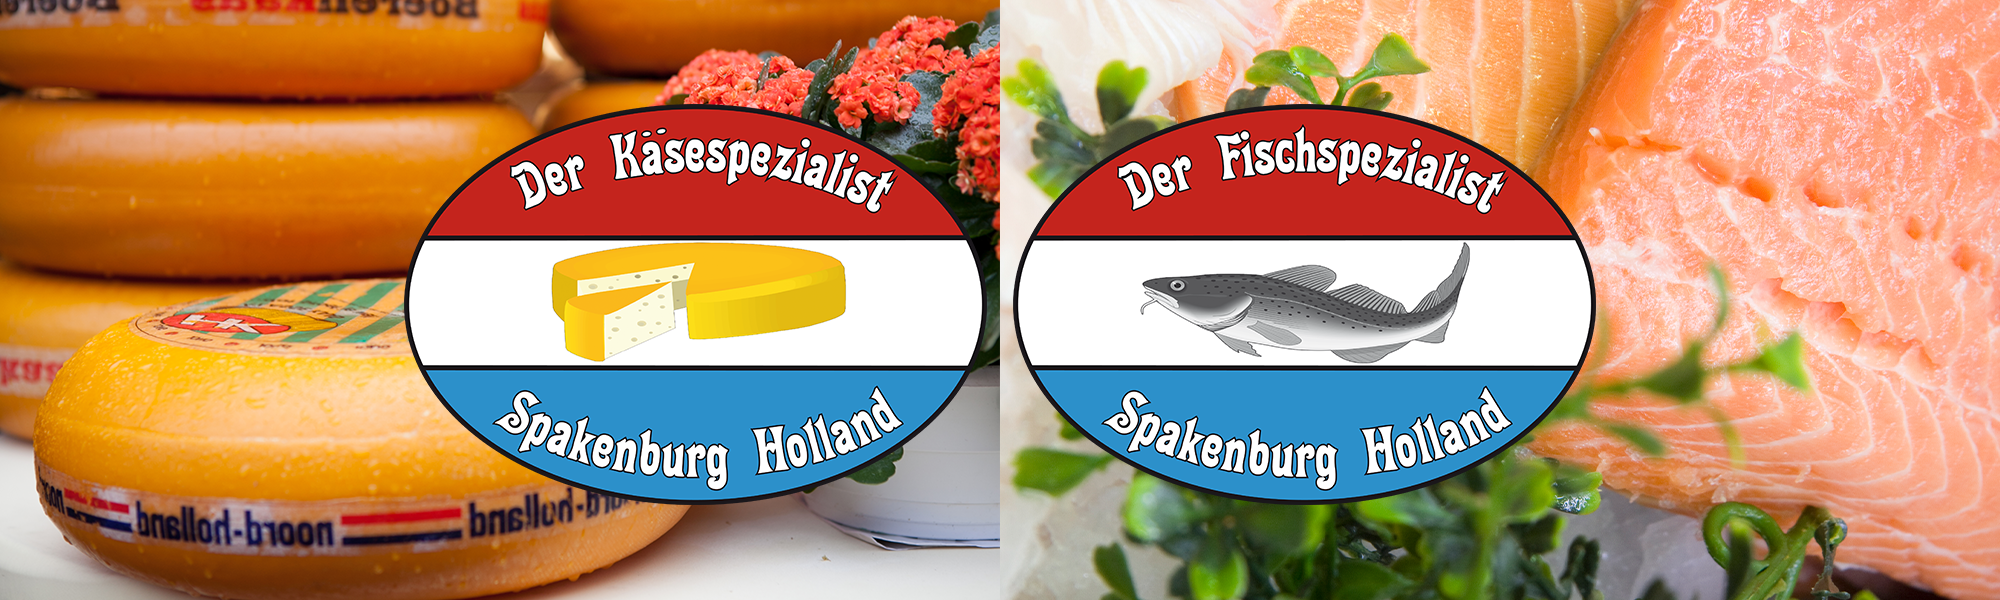 Homeslider-Kaese-und-Fischspezialist-2000x600px